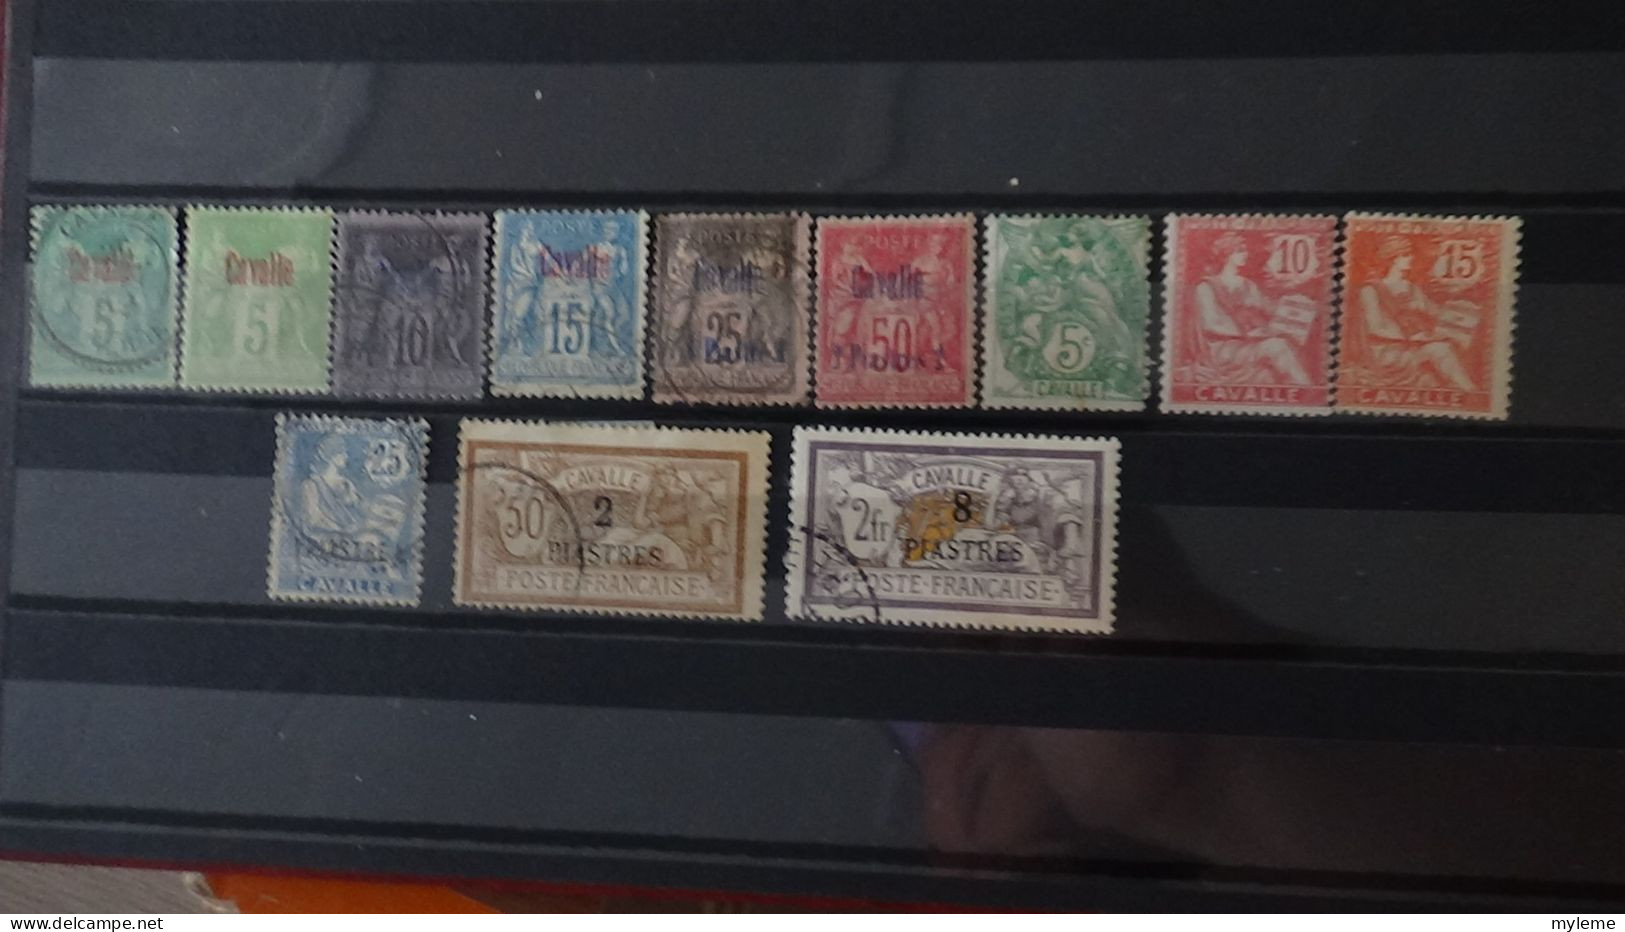 AZ105 Bel ensemble de timbres des anciennes colonies Françaises  A saisir !!!